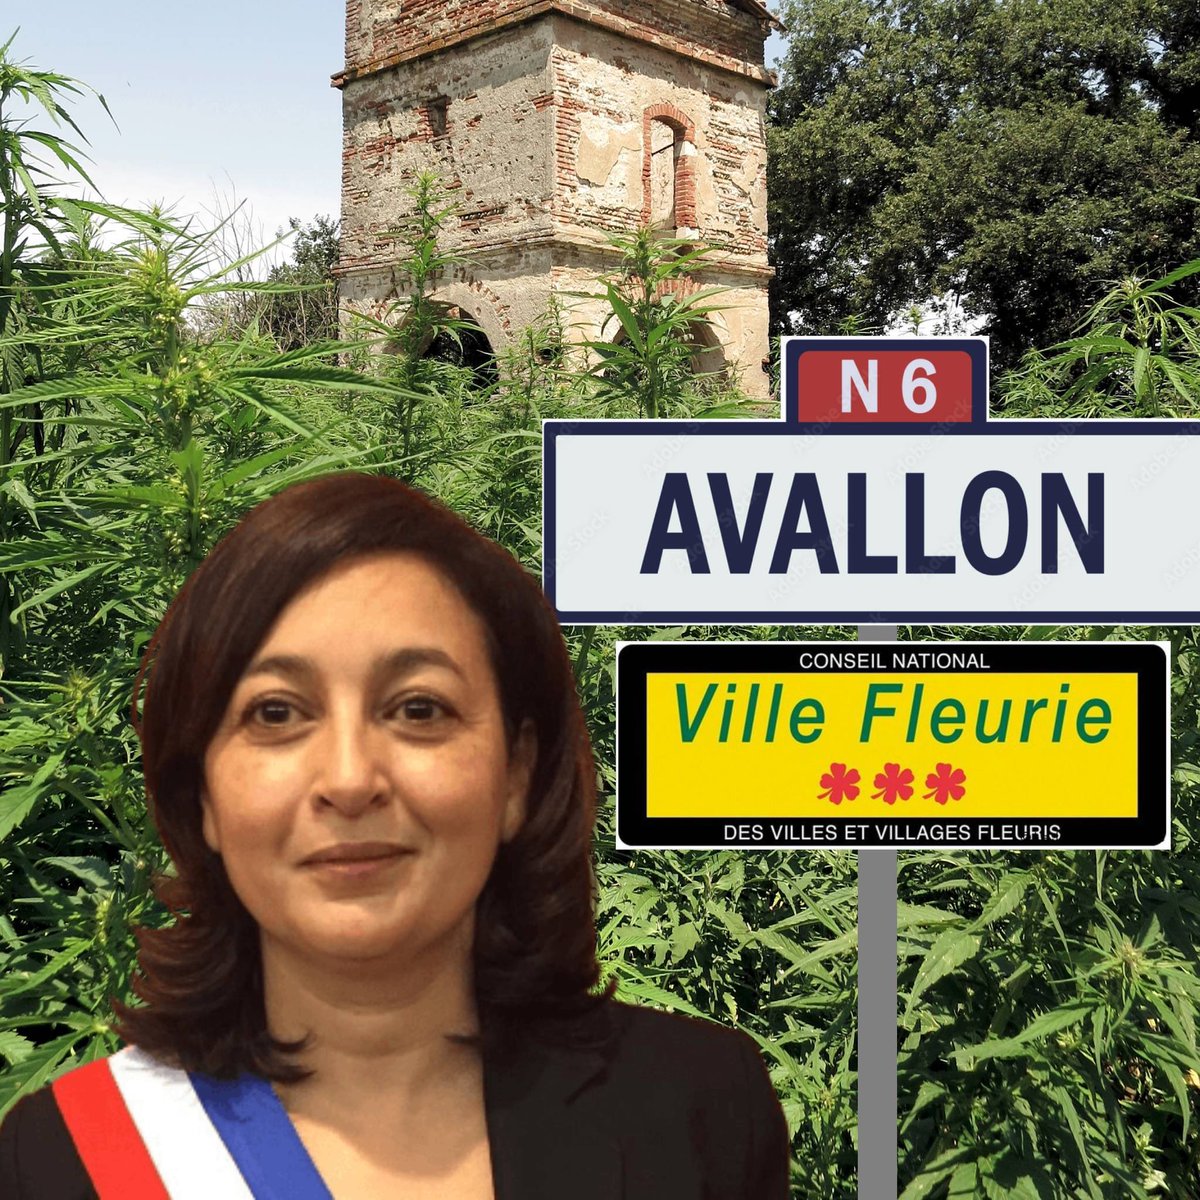 Quand on est de gauche, on peut tout se permettre ! Ont été retrouvés chez #JamilahHabsaoui, la maire d'#Avallon. • 70kg de cannabis, • près d'1kg de cocaïne, • 20 lingots d'or • plus de 7000 euros de liquide